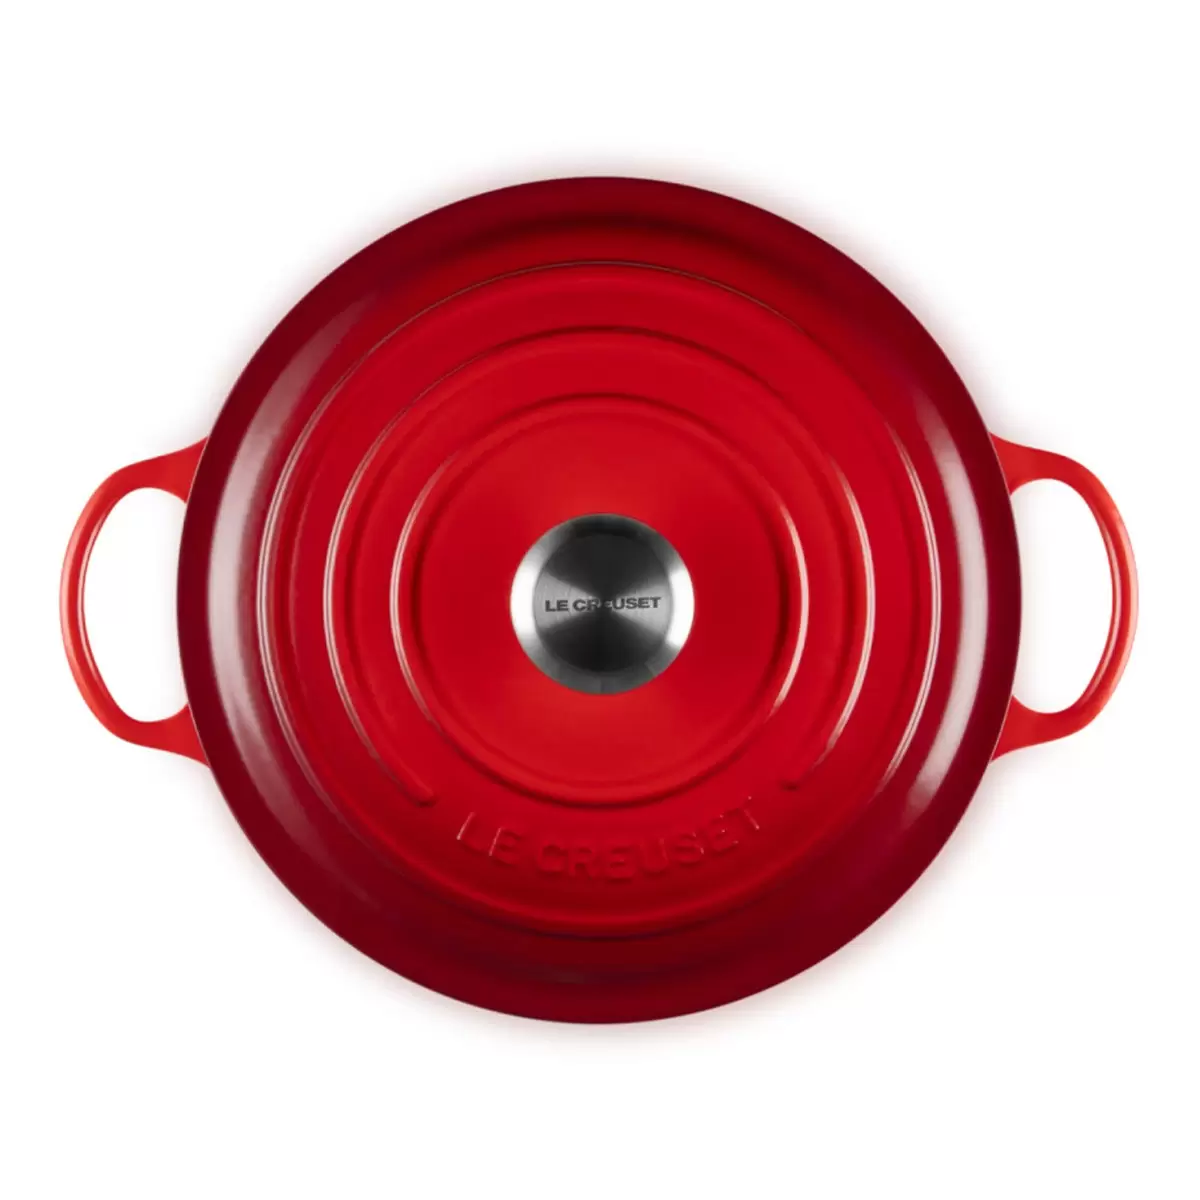 Le Creuset 琺瑯鑄鐵媽咪鍋 含鋼頭鍋蓋 28公分 櫻桃紅